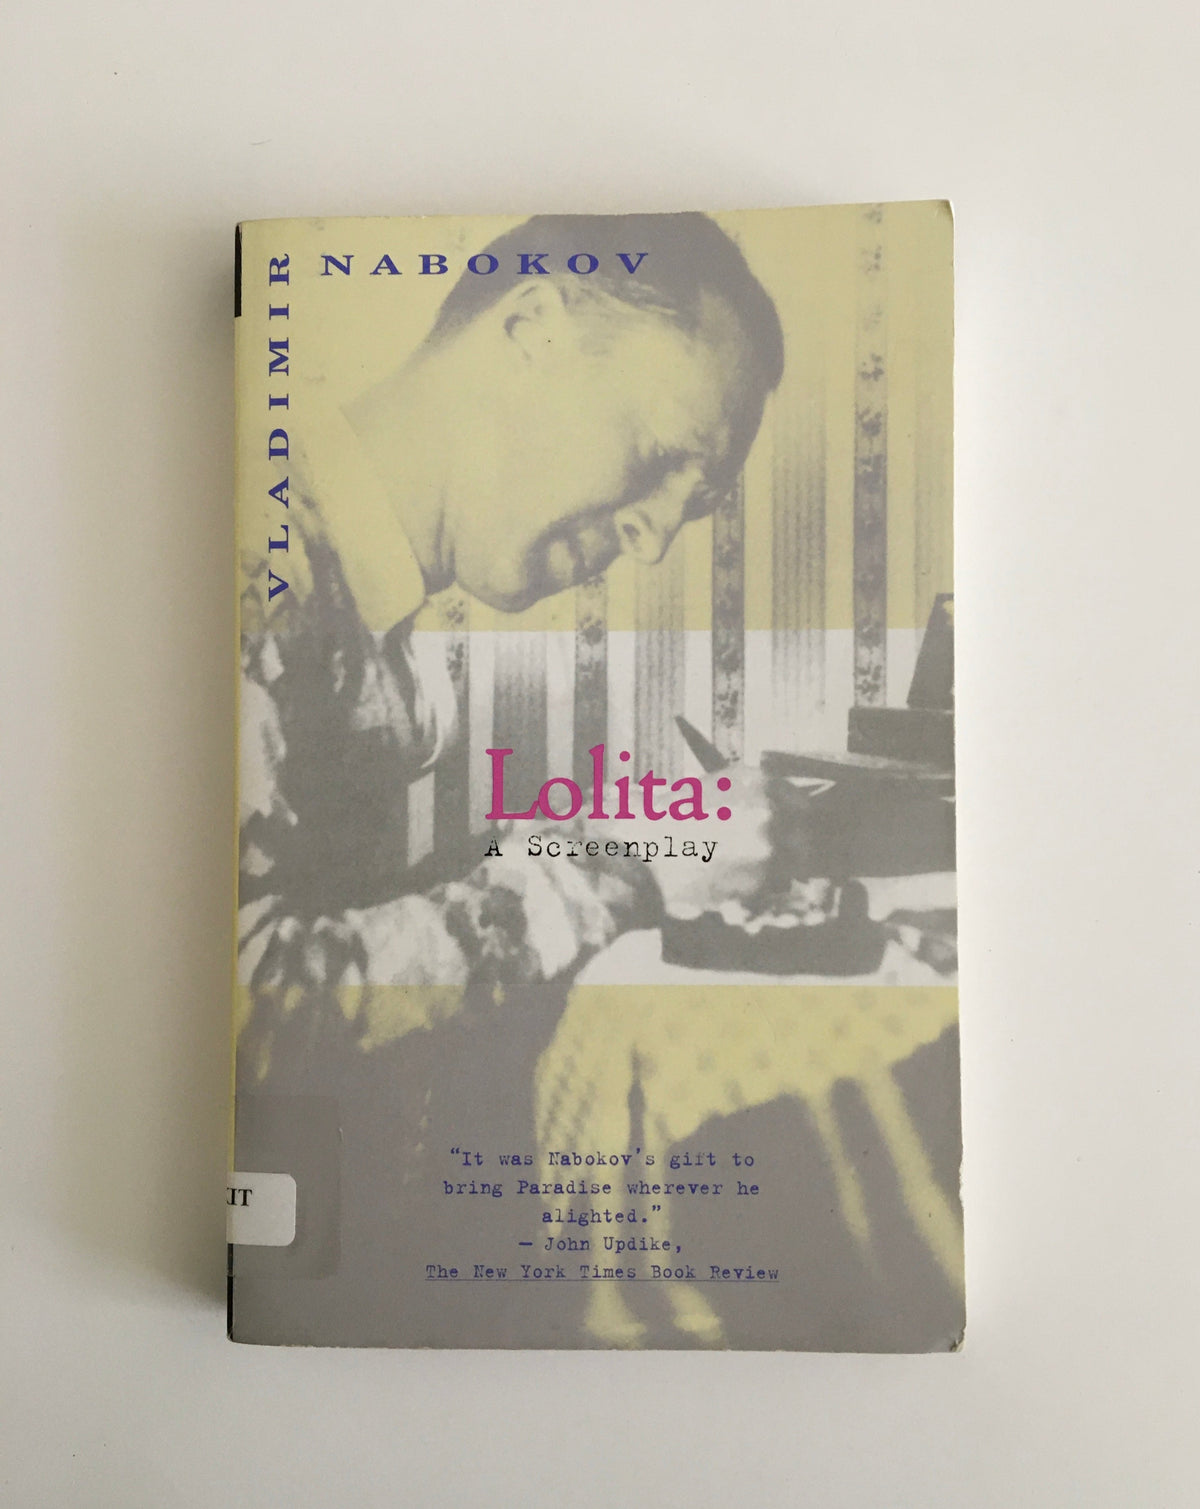 Lolita: A Screenplay by Vladimir Nabokov